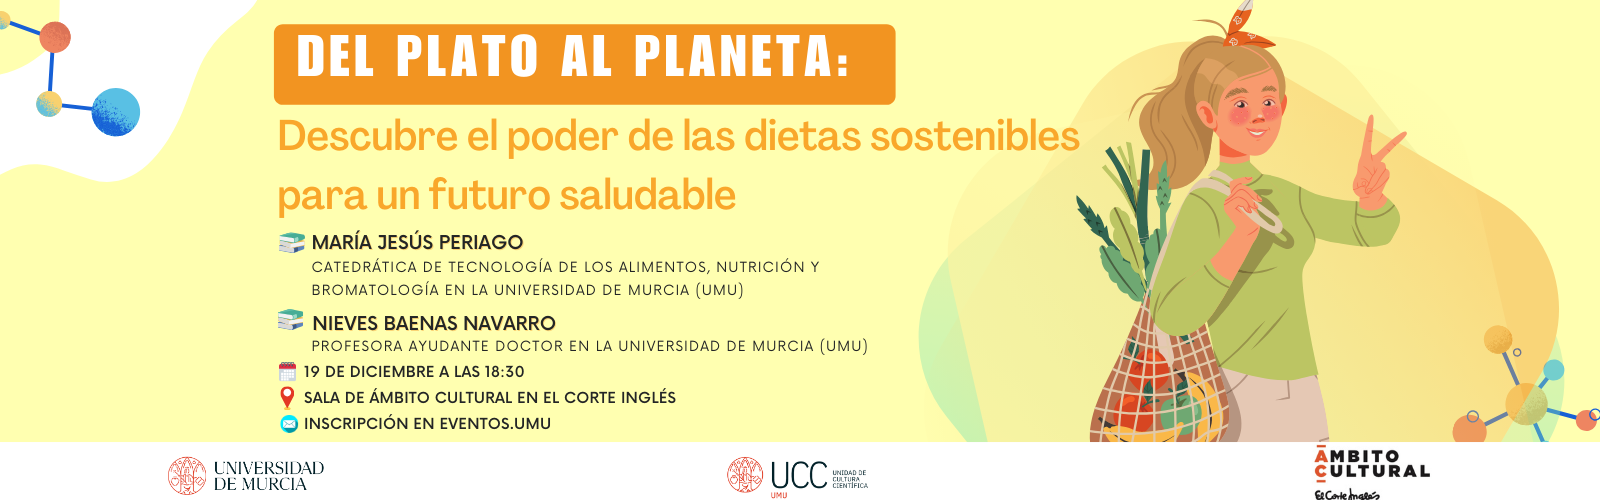 Las investigadoras María Jesús Periago y Nieves Baenas se suman a la ‘UMU y la Cultura Científica’ con una charla sobre la alimentación y su impacto en el planeta